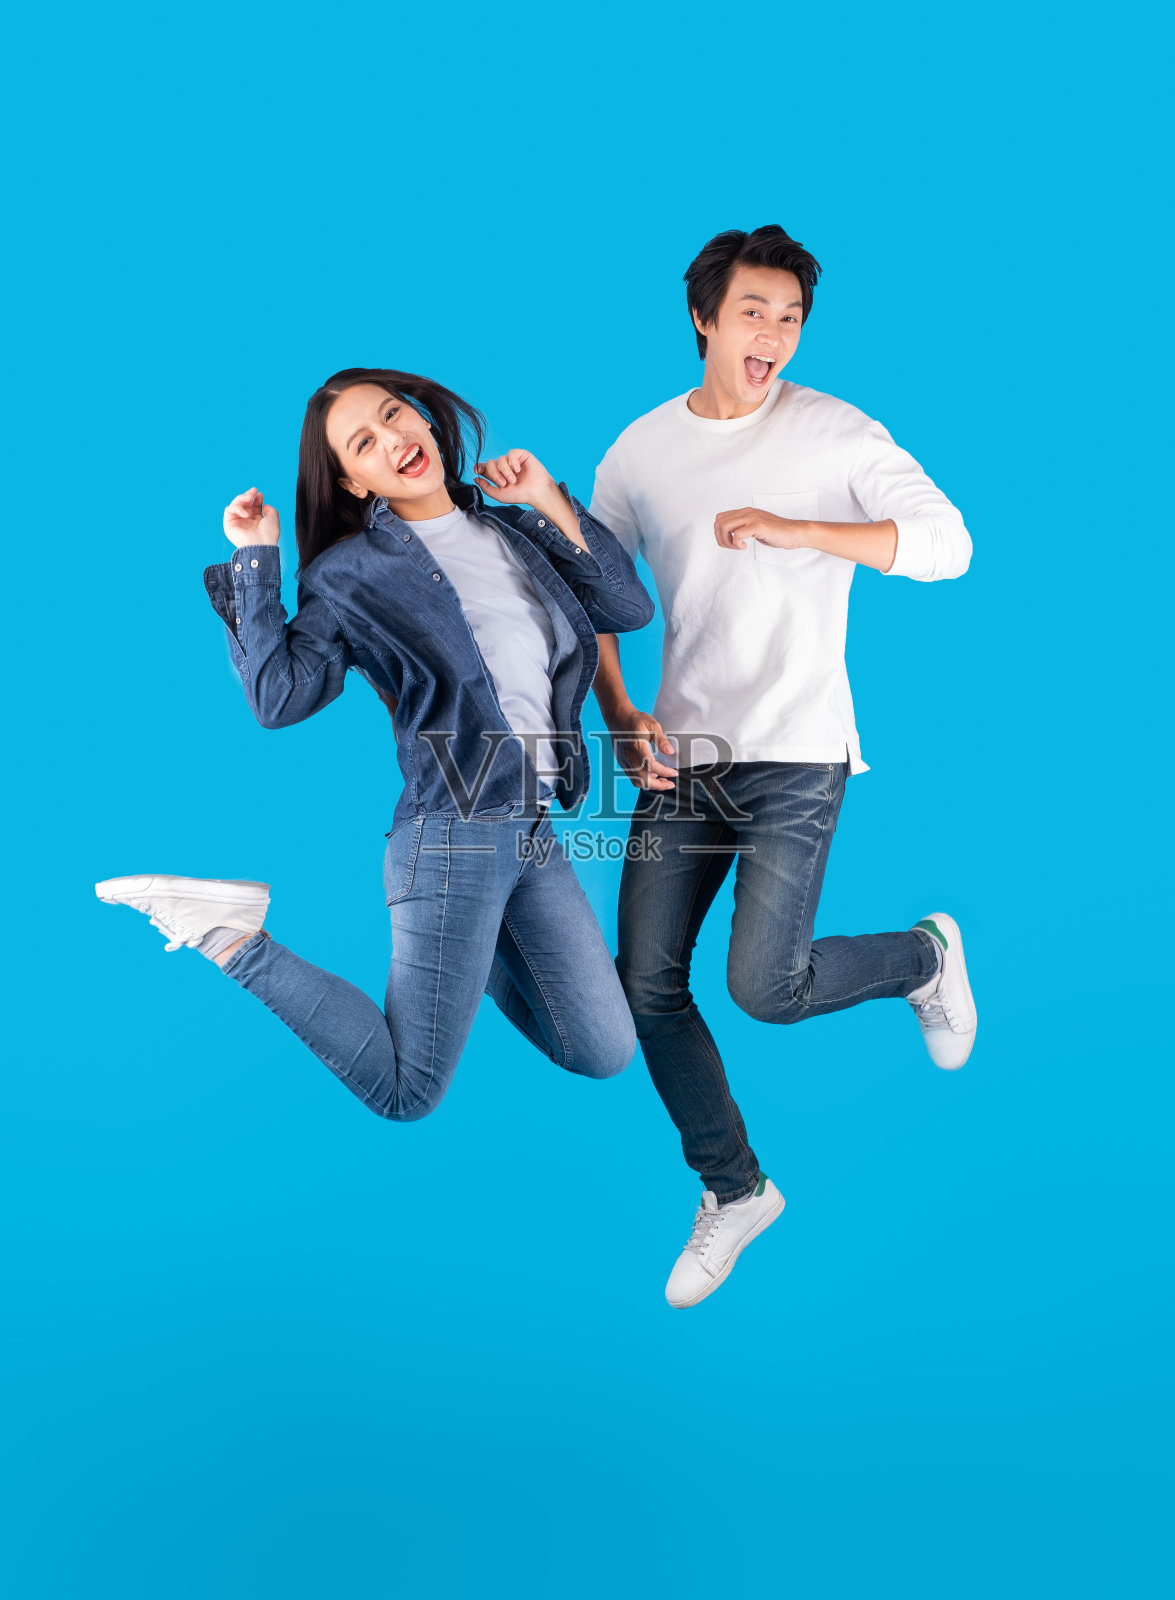 年轻的亚洲夫妇男人和女人跳跃与快乐和有趣的蓝色背景照片摄影图片